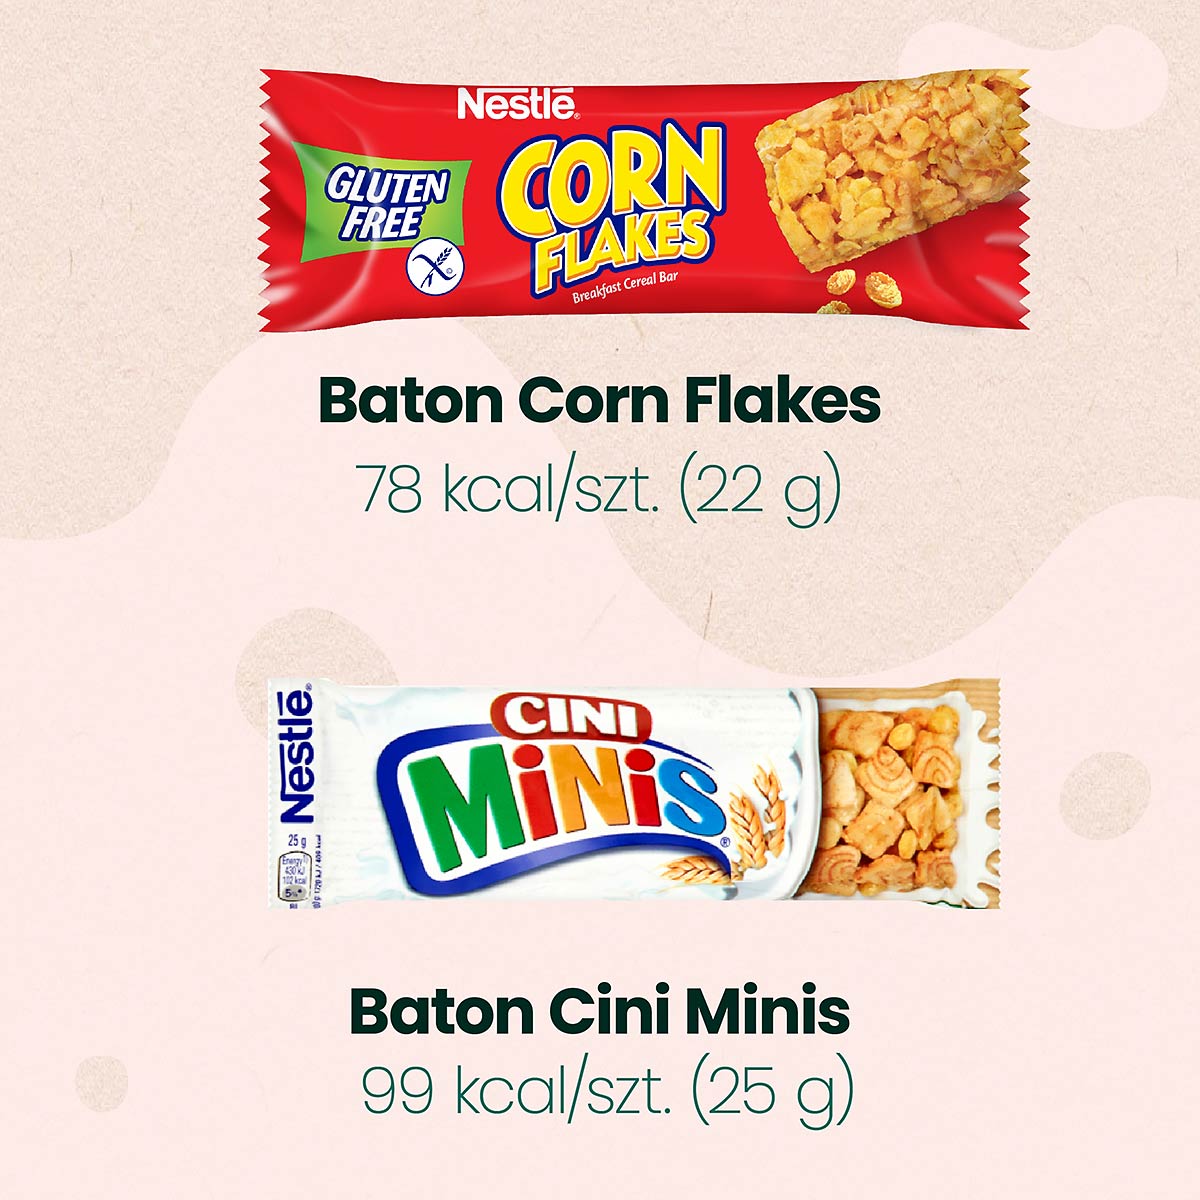 Batony Corn Flakes i Cini Minis zawierają mniej niż 100 kcal